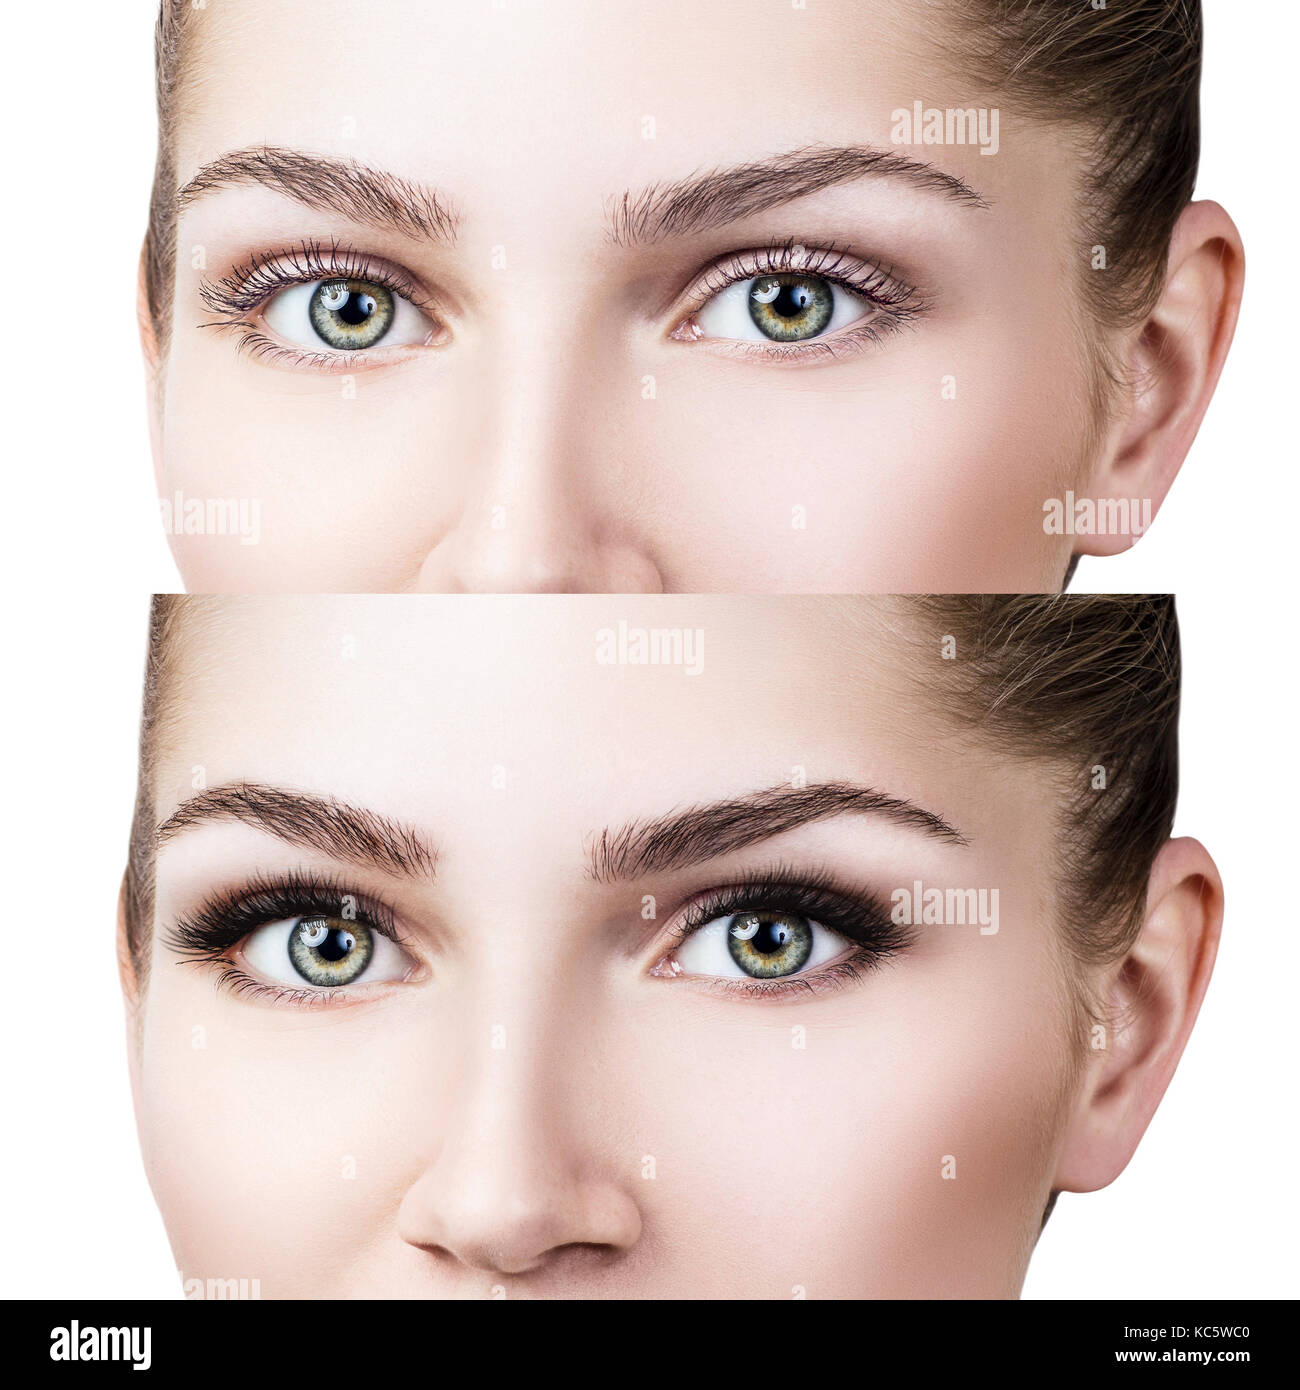 Gli occhi di femmina prima e dopo extension delle ciglia Foto Stock